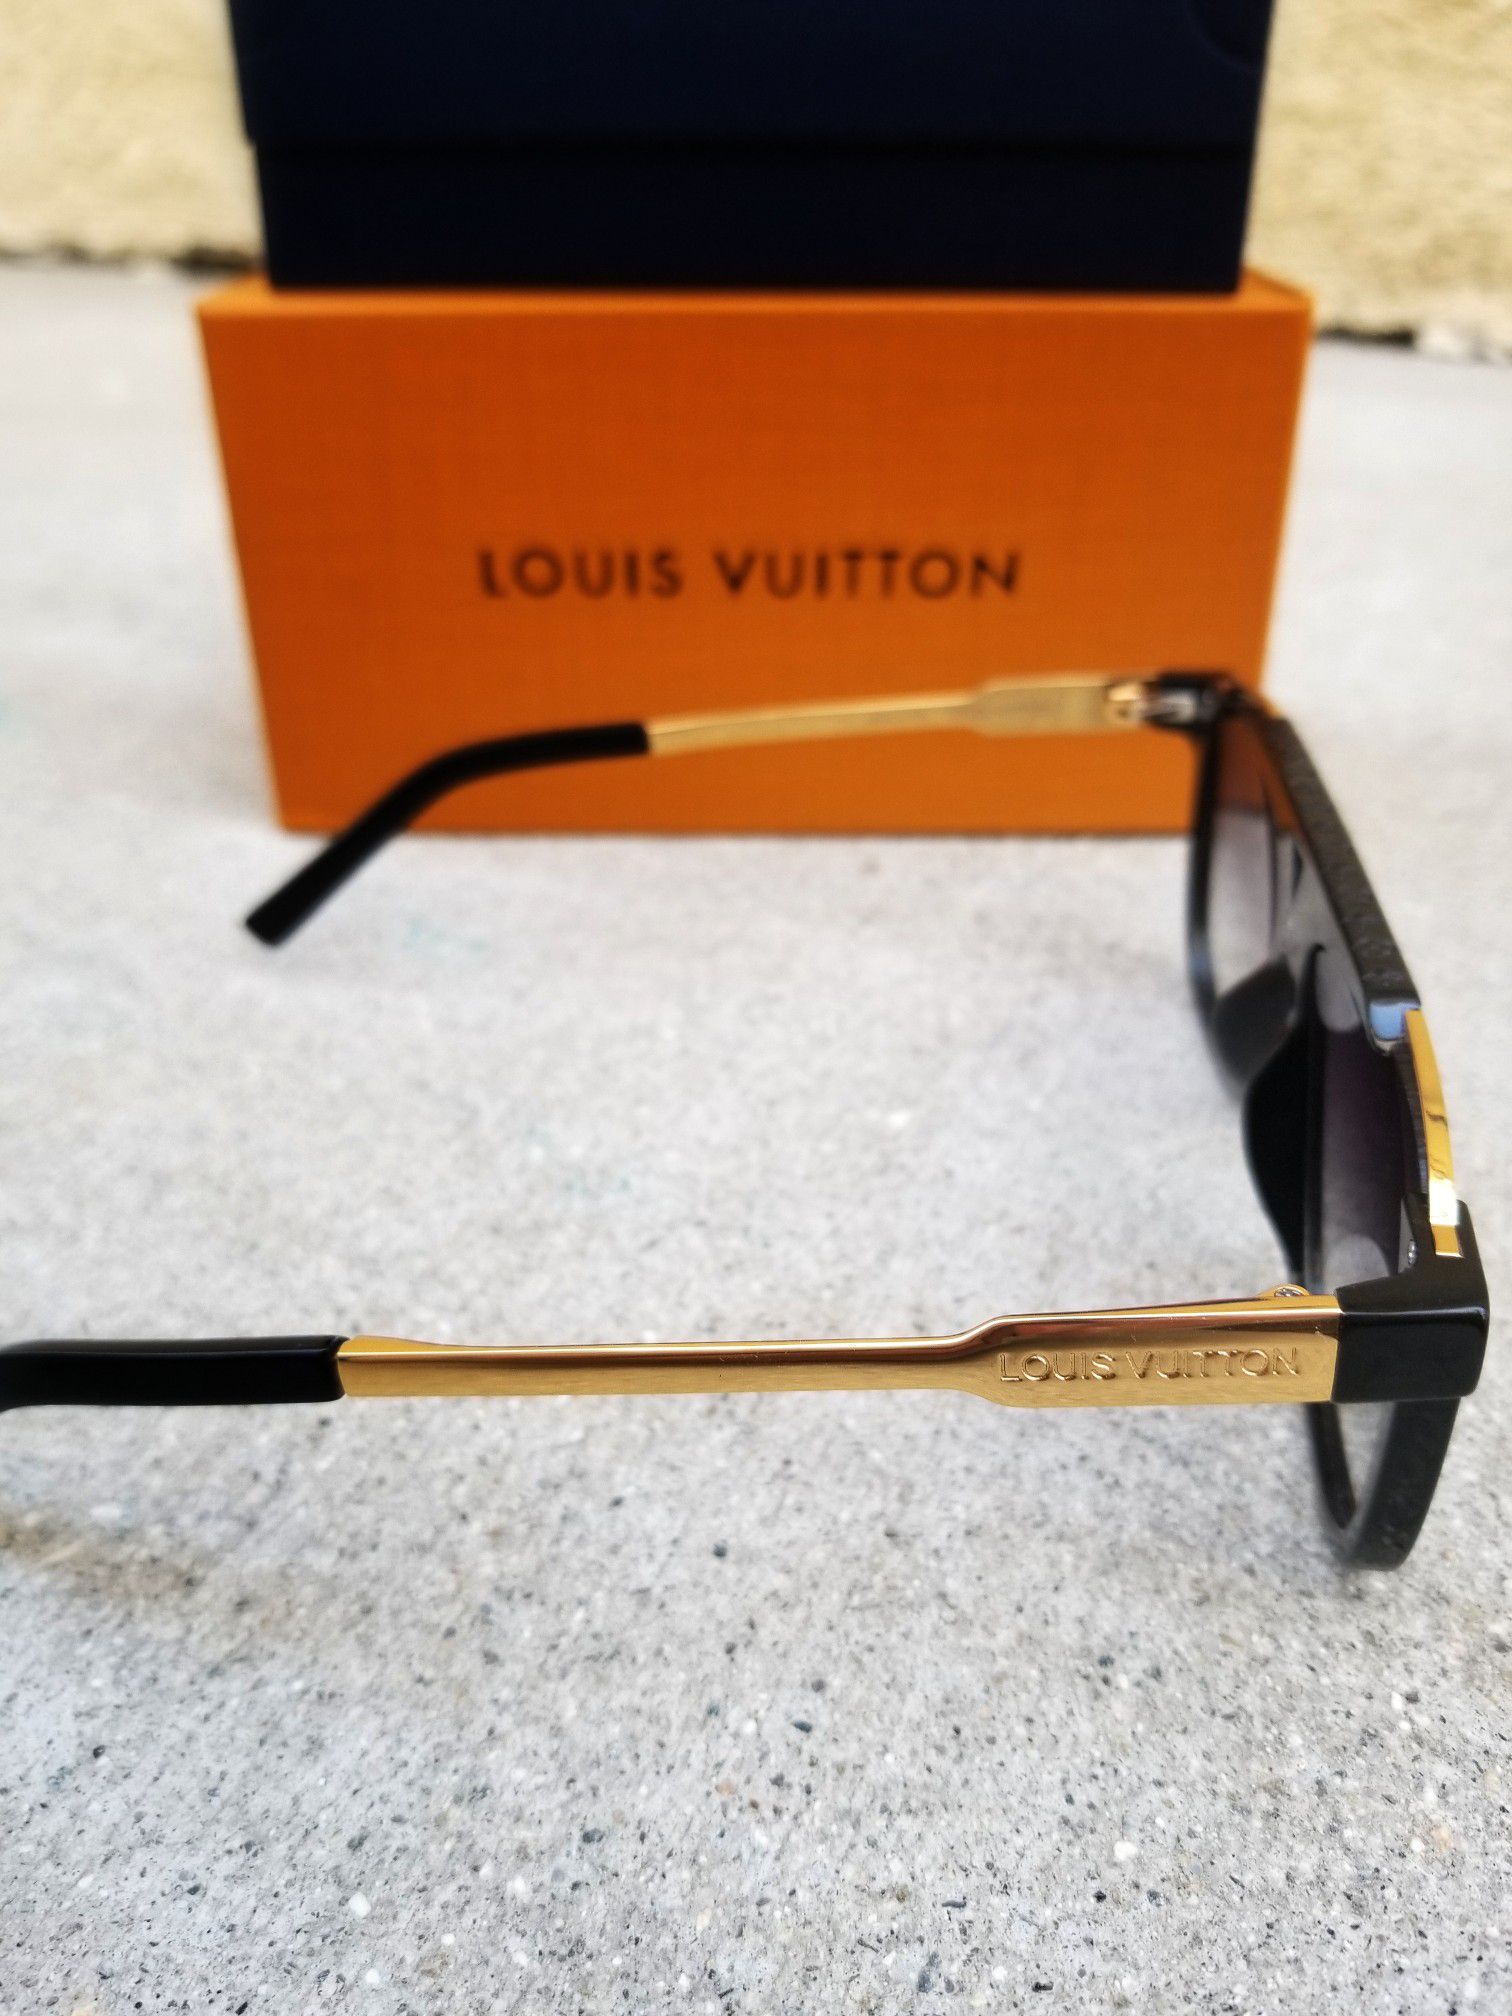 Gorgeous Authentic Louis Vuitton Purple Rain Z2377E Gradient Pilot  Sunglasses for Sale in Aurora, CO - OfferUp